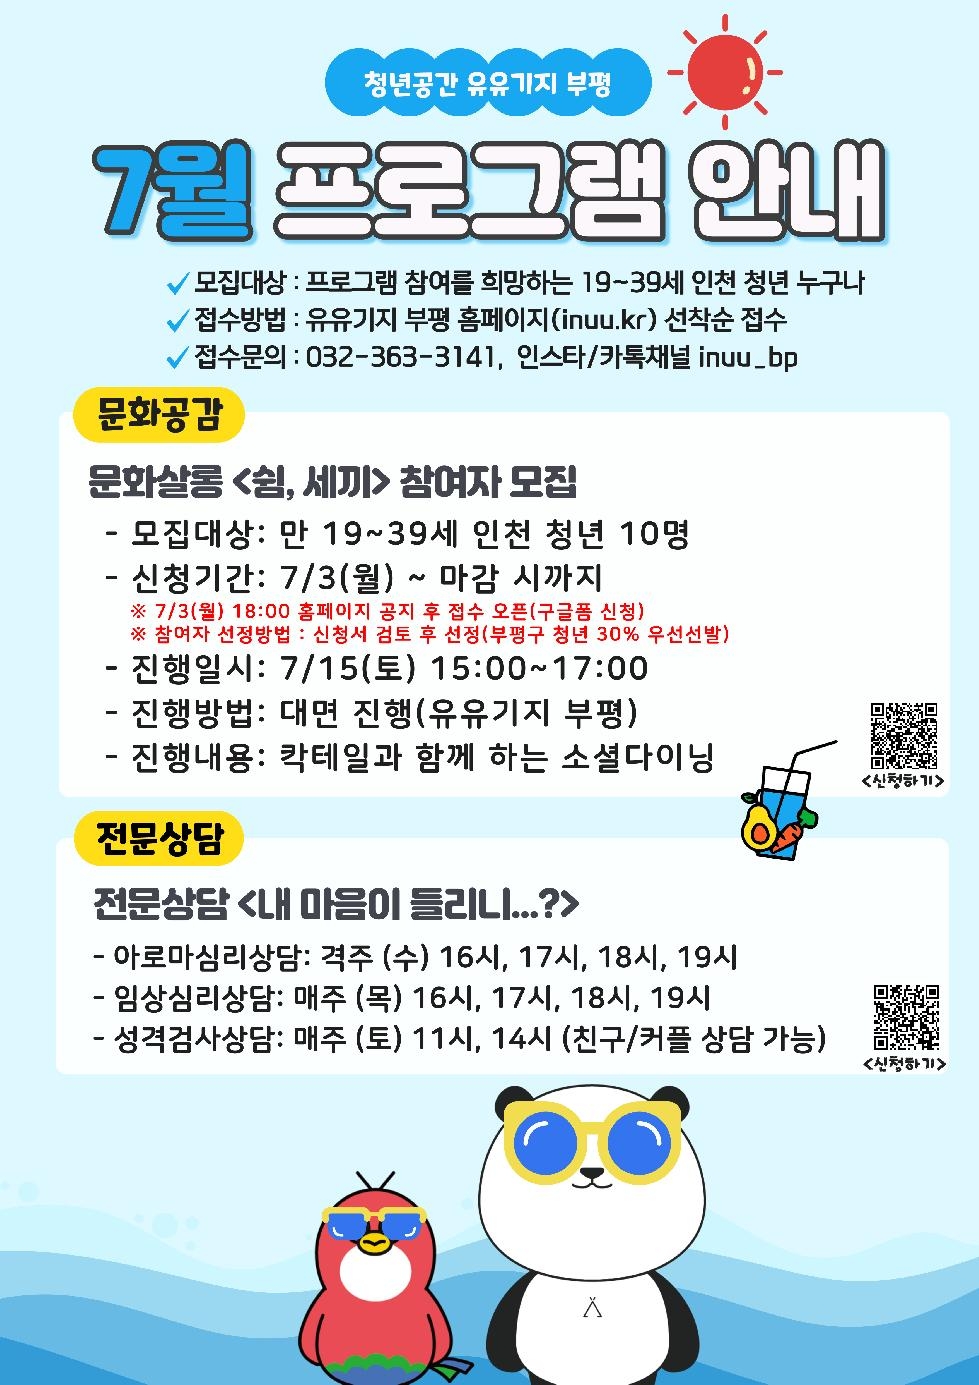 인천 부평구 청년공간 유유기지 부평, 7월 프로그램 참여자 모집